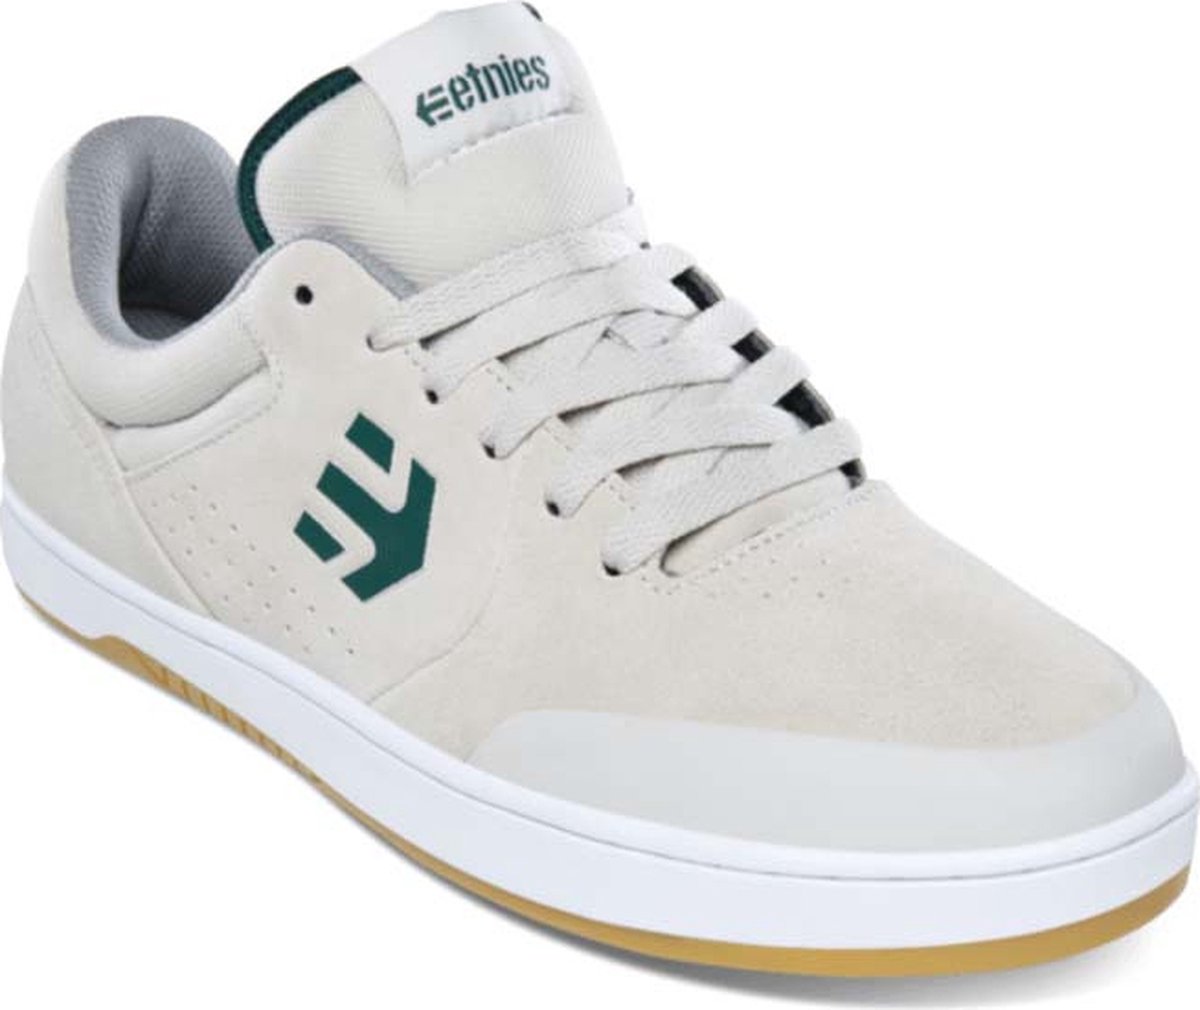 Etnies - Marana - Maat 45.5 - Wit - Groen - Skate schoen - Casual schoen